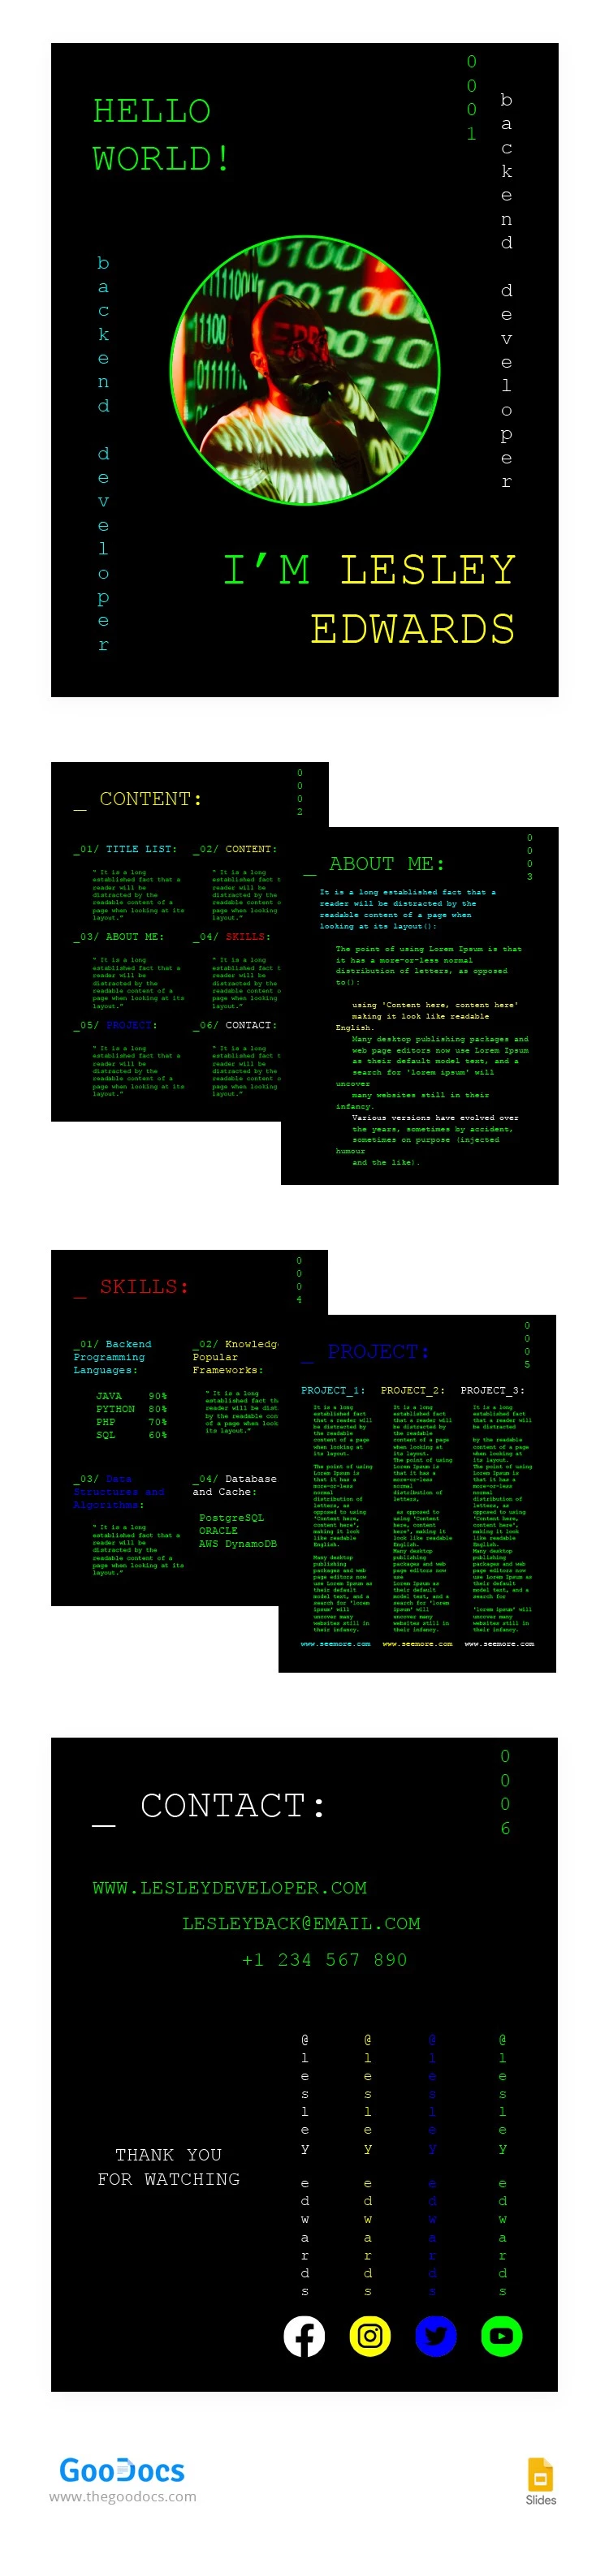 Portafolio de desarrollador Backend en negro - free Google Docs Template - 10064074